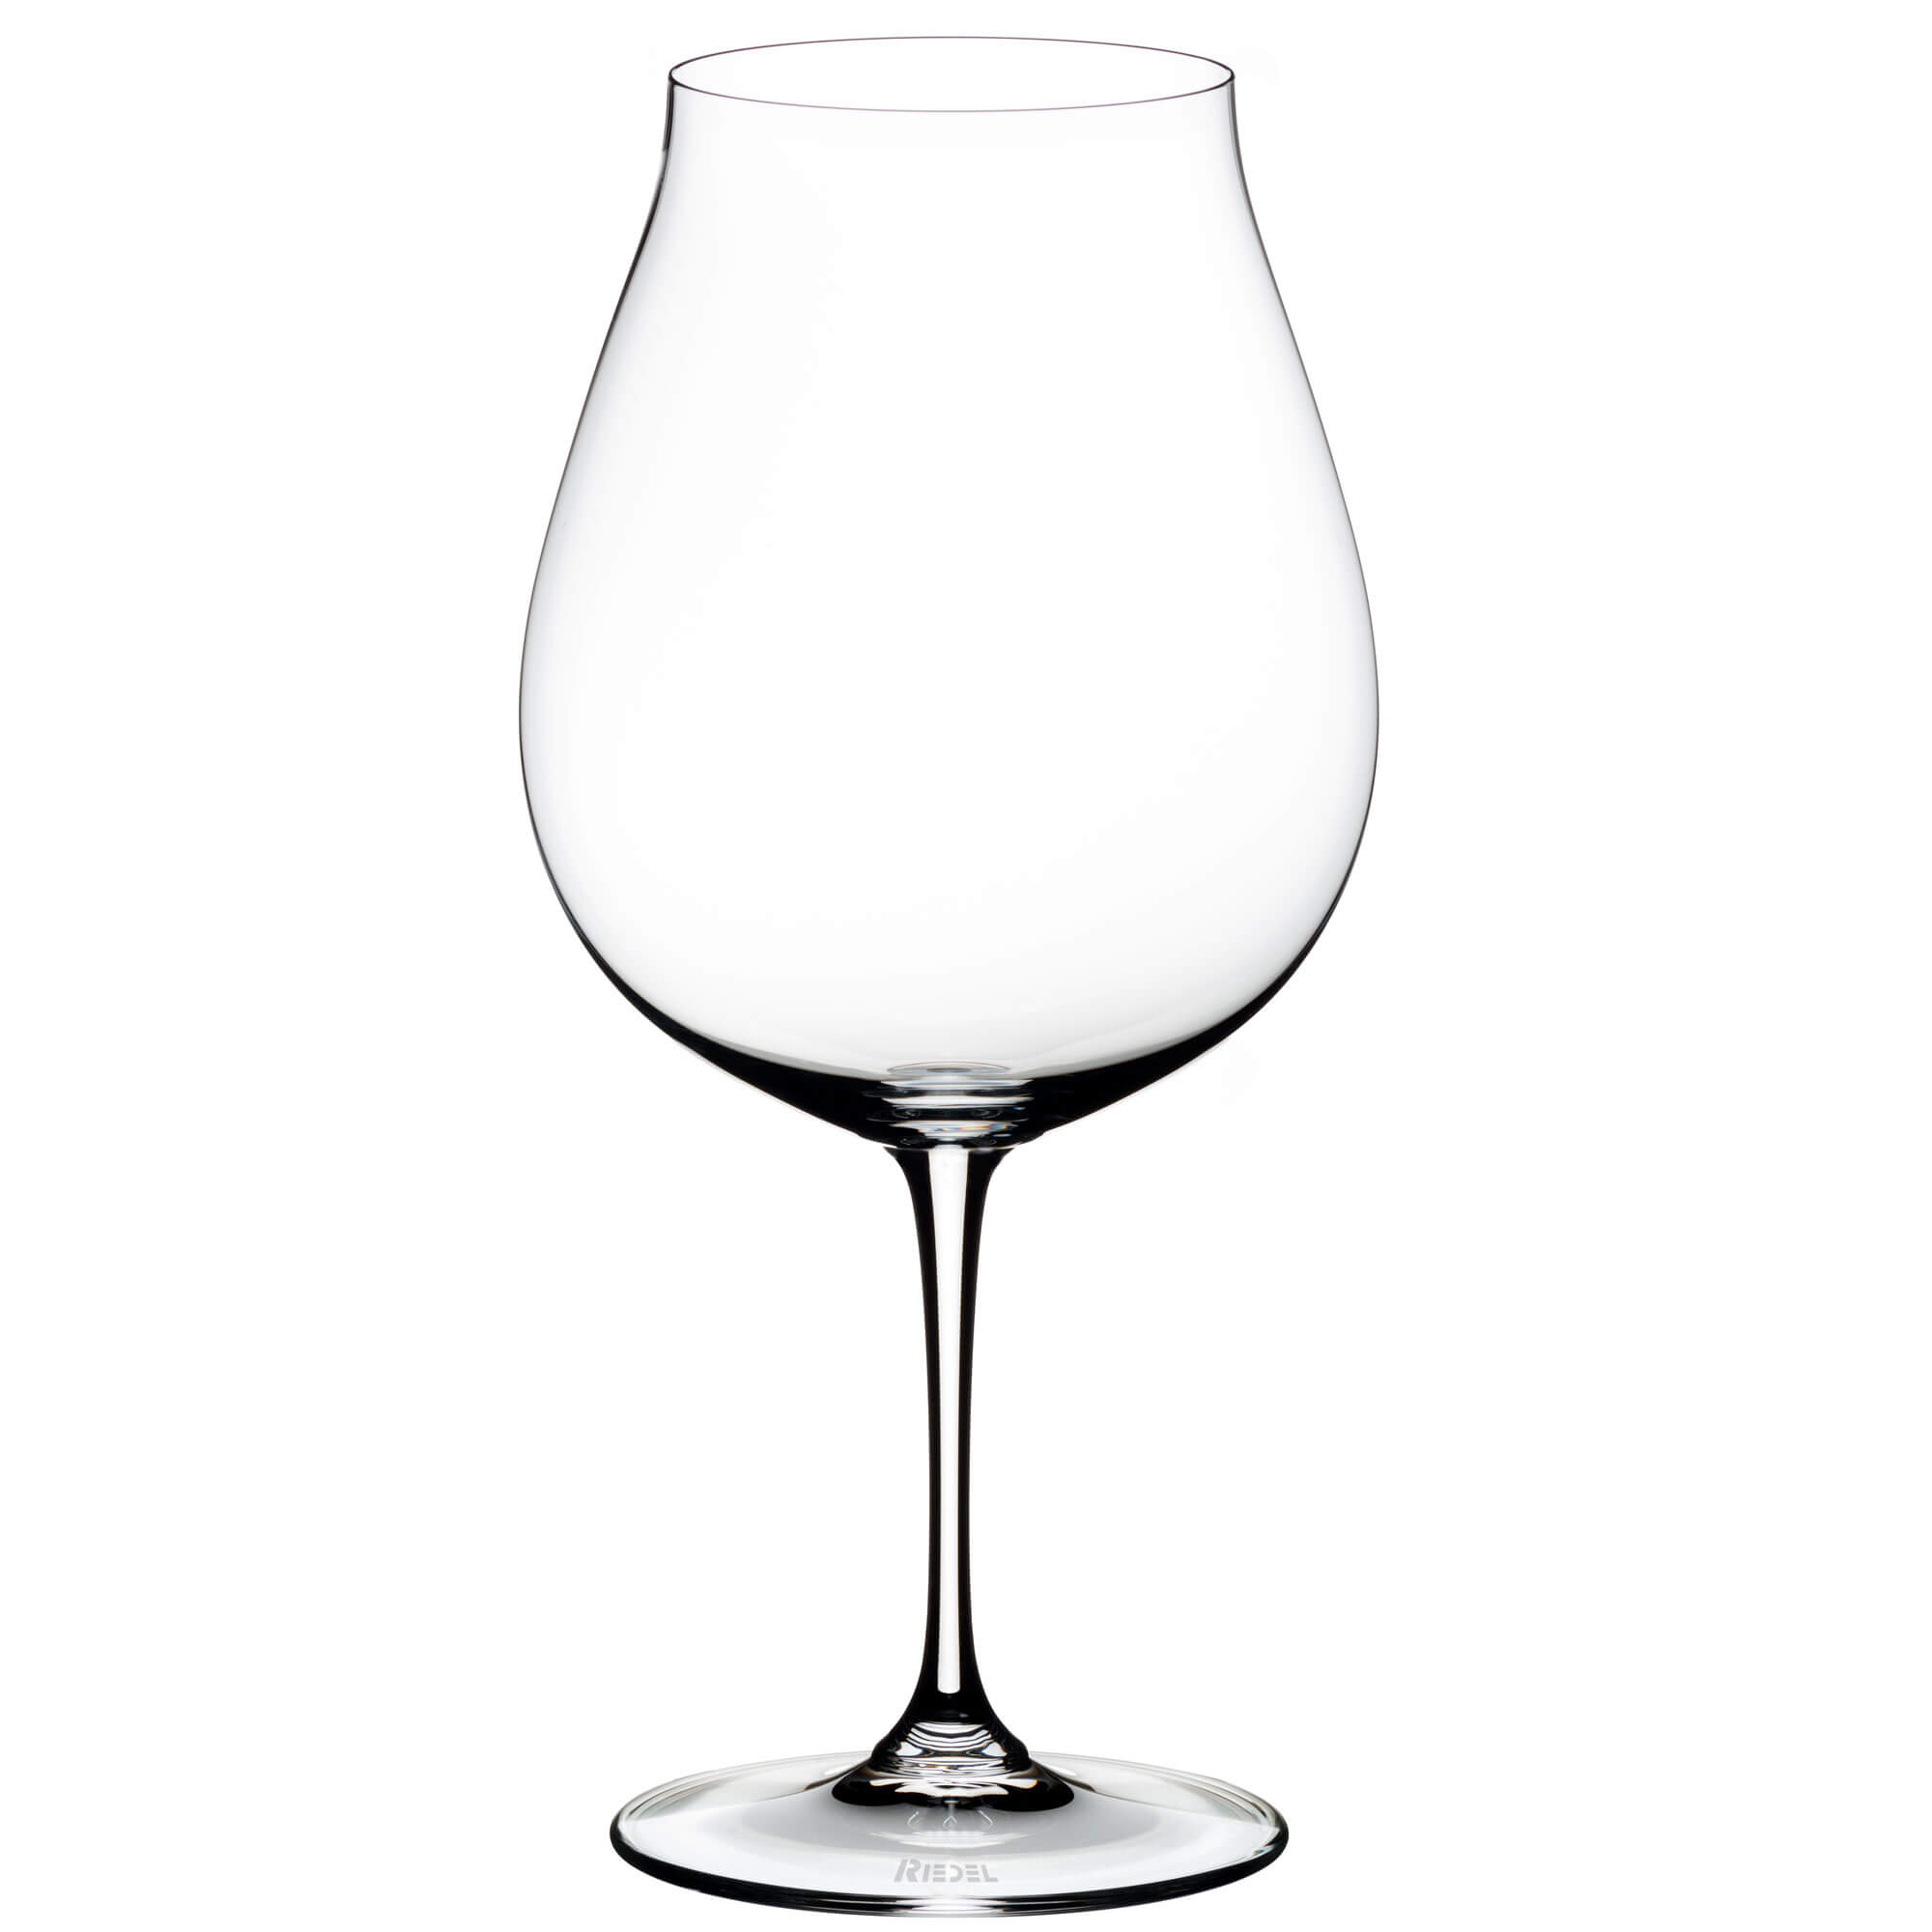 Neue Welt Pinot Noir Glas Vinum, Riedel - 800ml (2 Stk.)